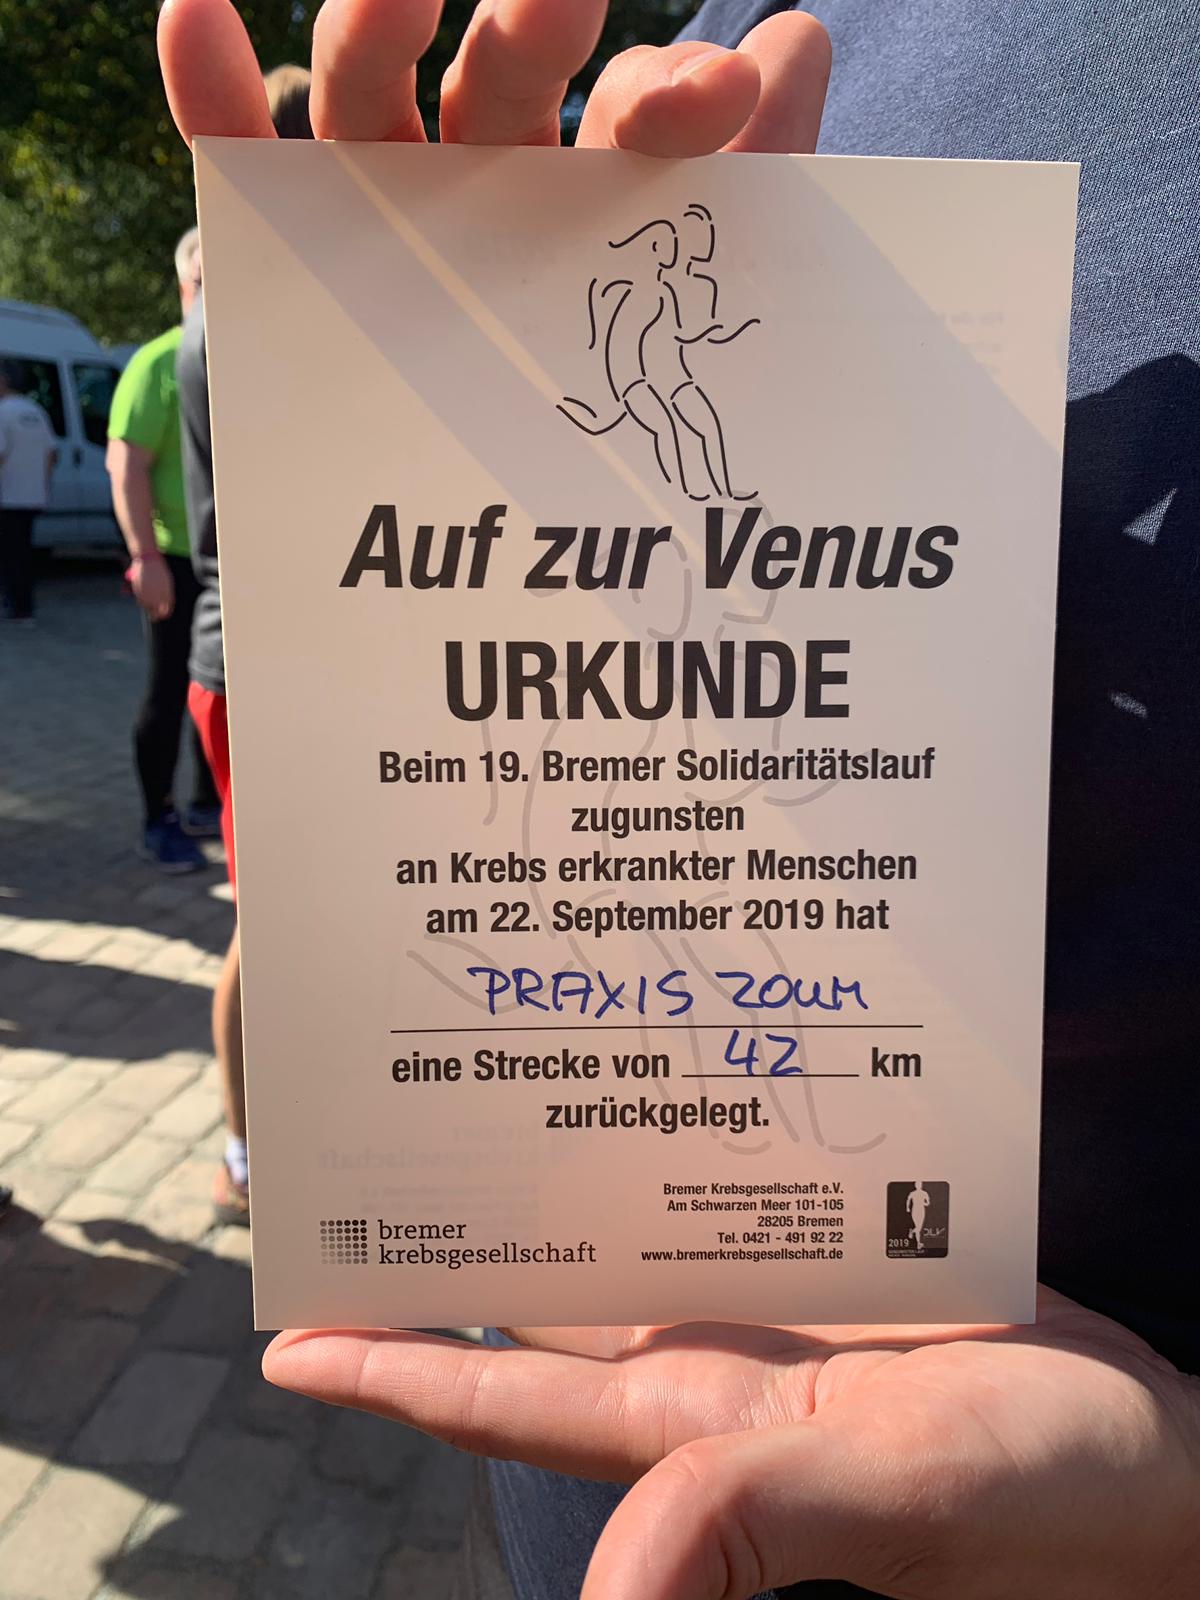 IMG 20190922 WA0032 | zoum.de | Venuslauf 2019 - Wir waren dabei!